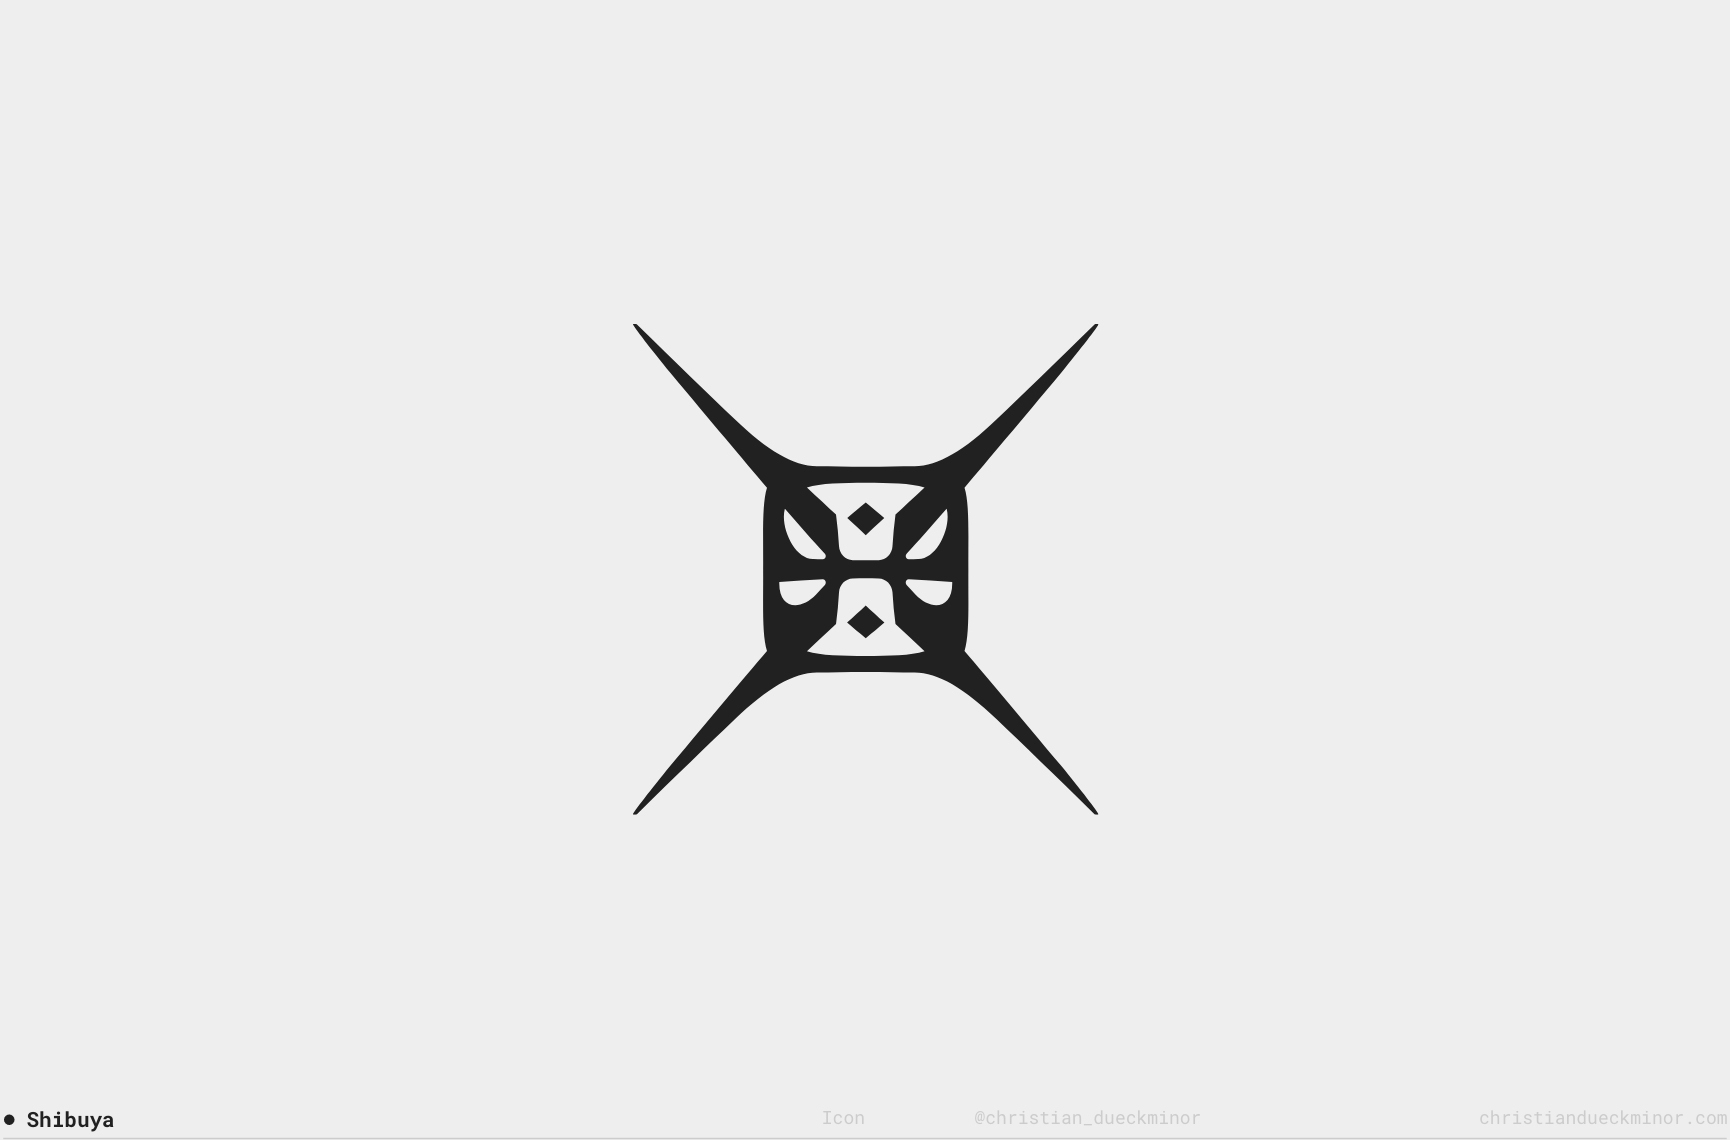 Christian-Dueckminor-Logo-Collection-02-06